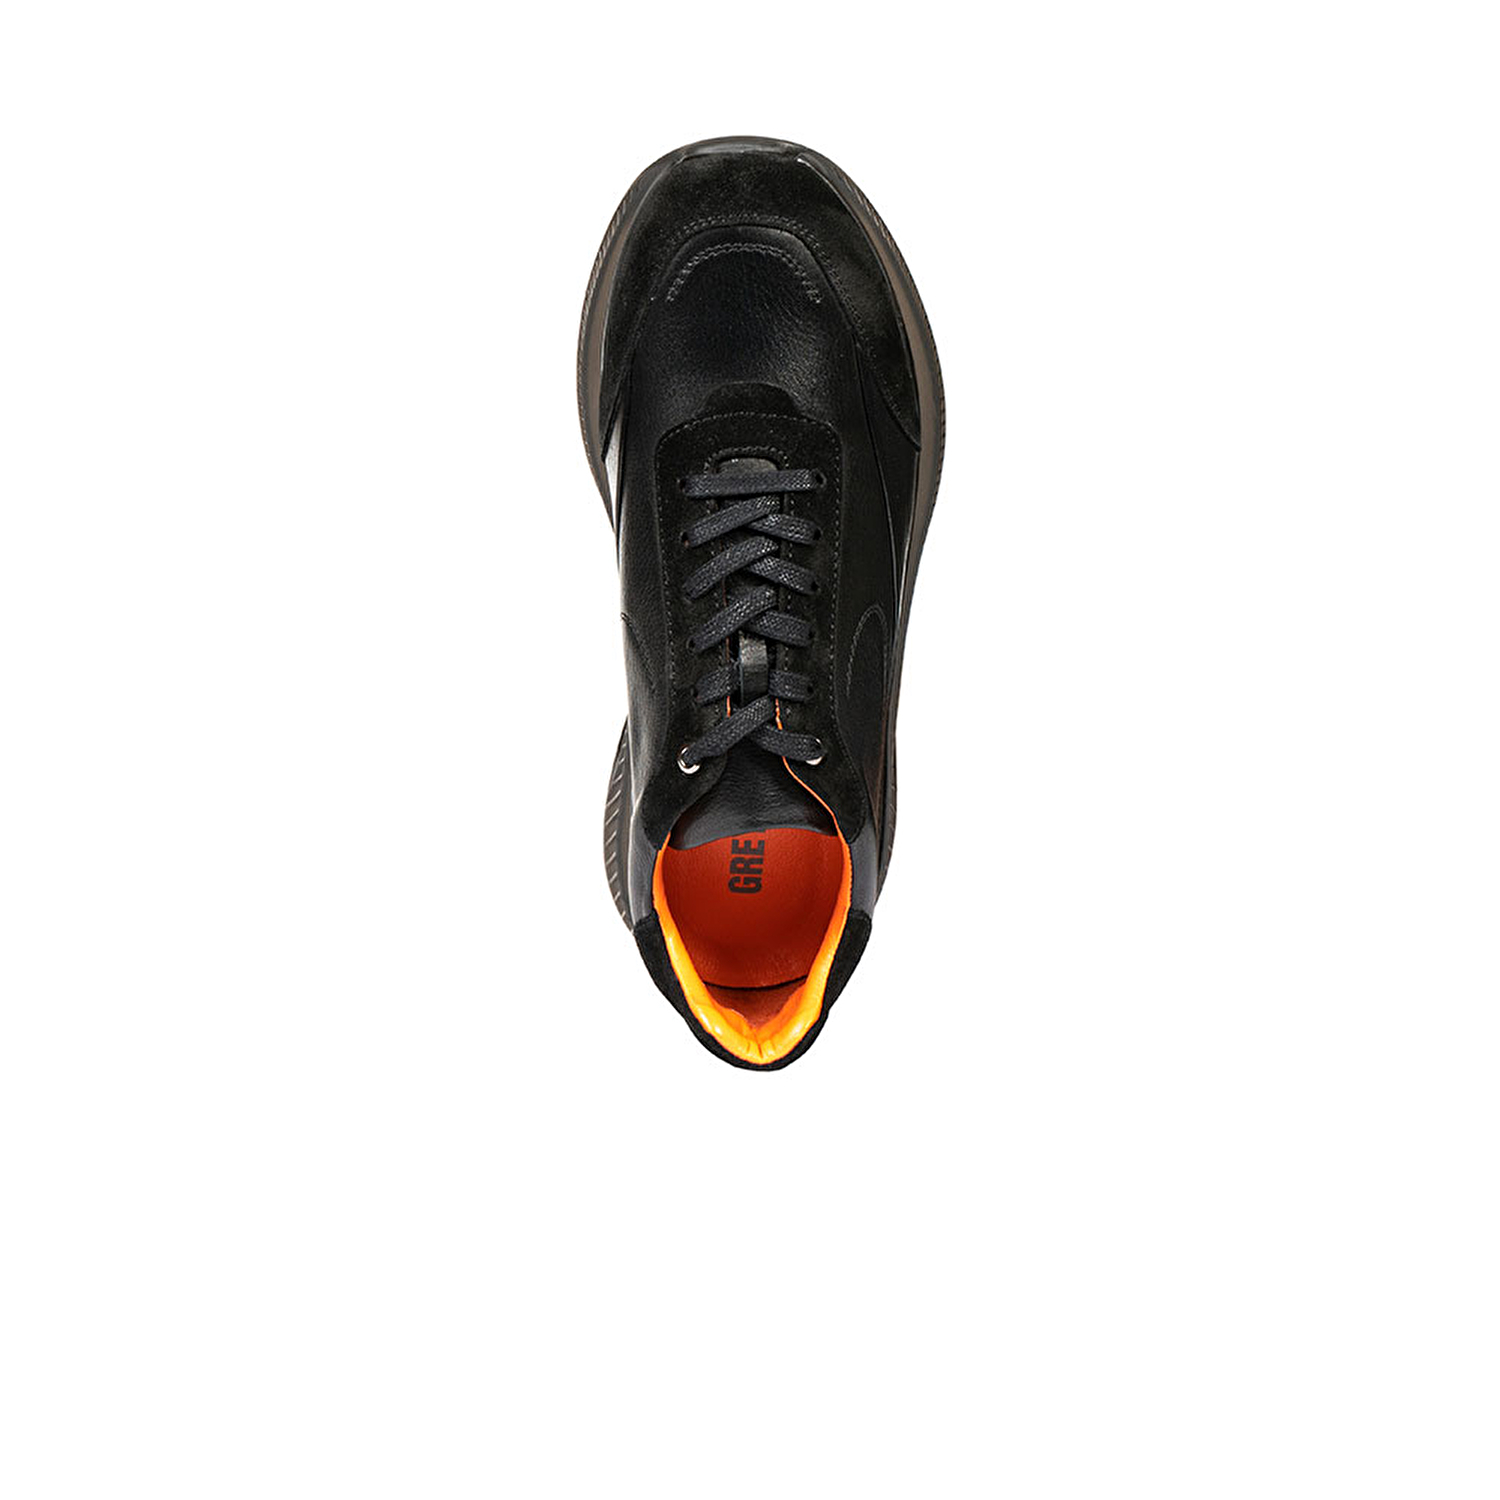 Erkek Ayakkabı Siyah Deri 67786-3